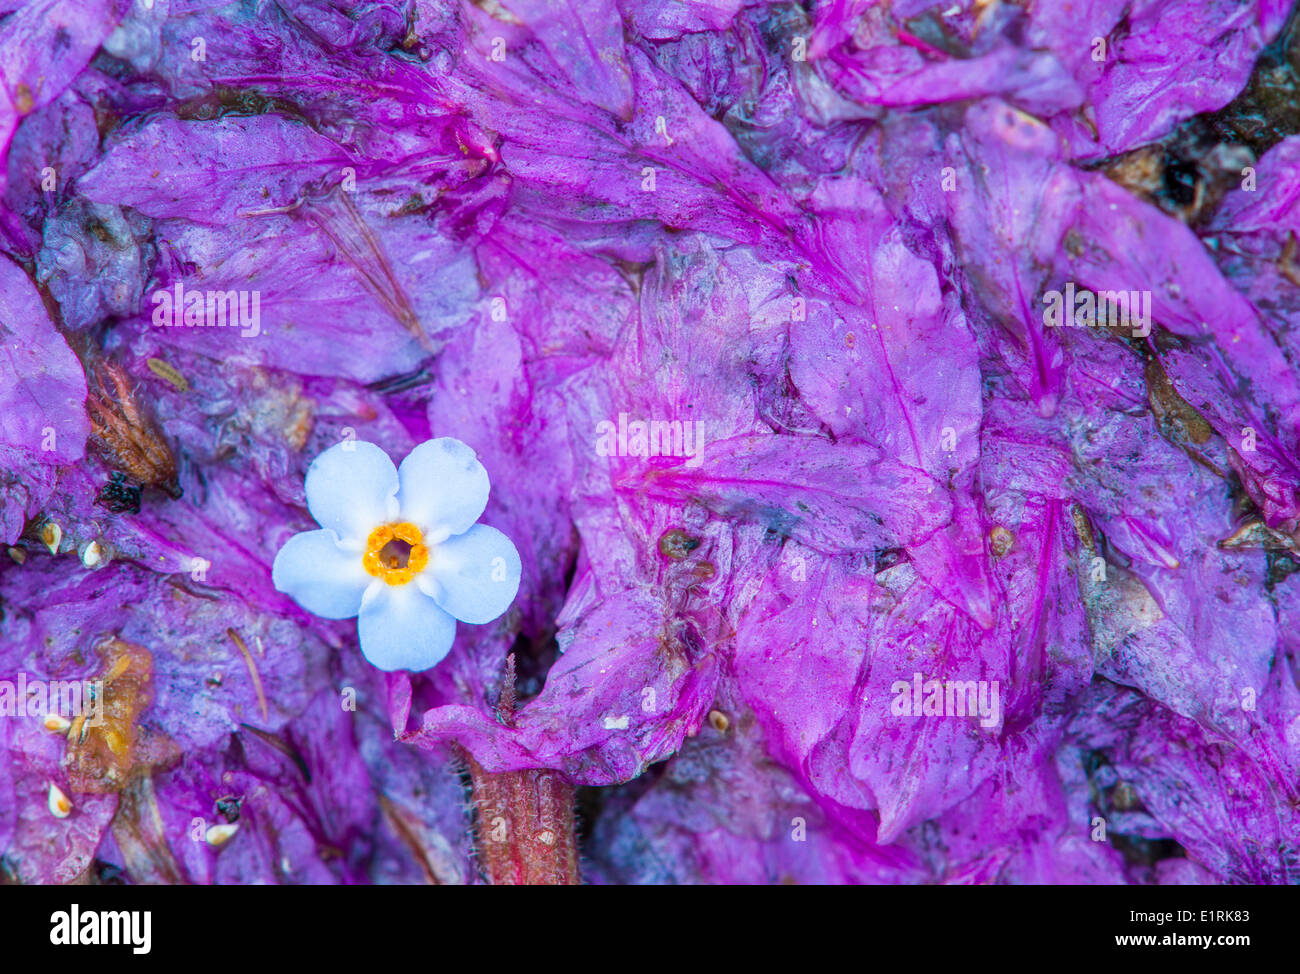 Dimenticare di acqua-me-non fiore su flowerpetals di purple loosestrife sul terreno alla fine della stagione di fioritura Foto Stock